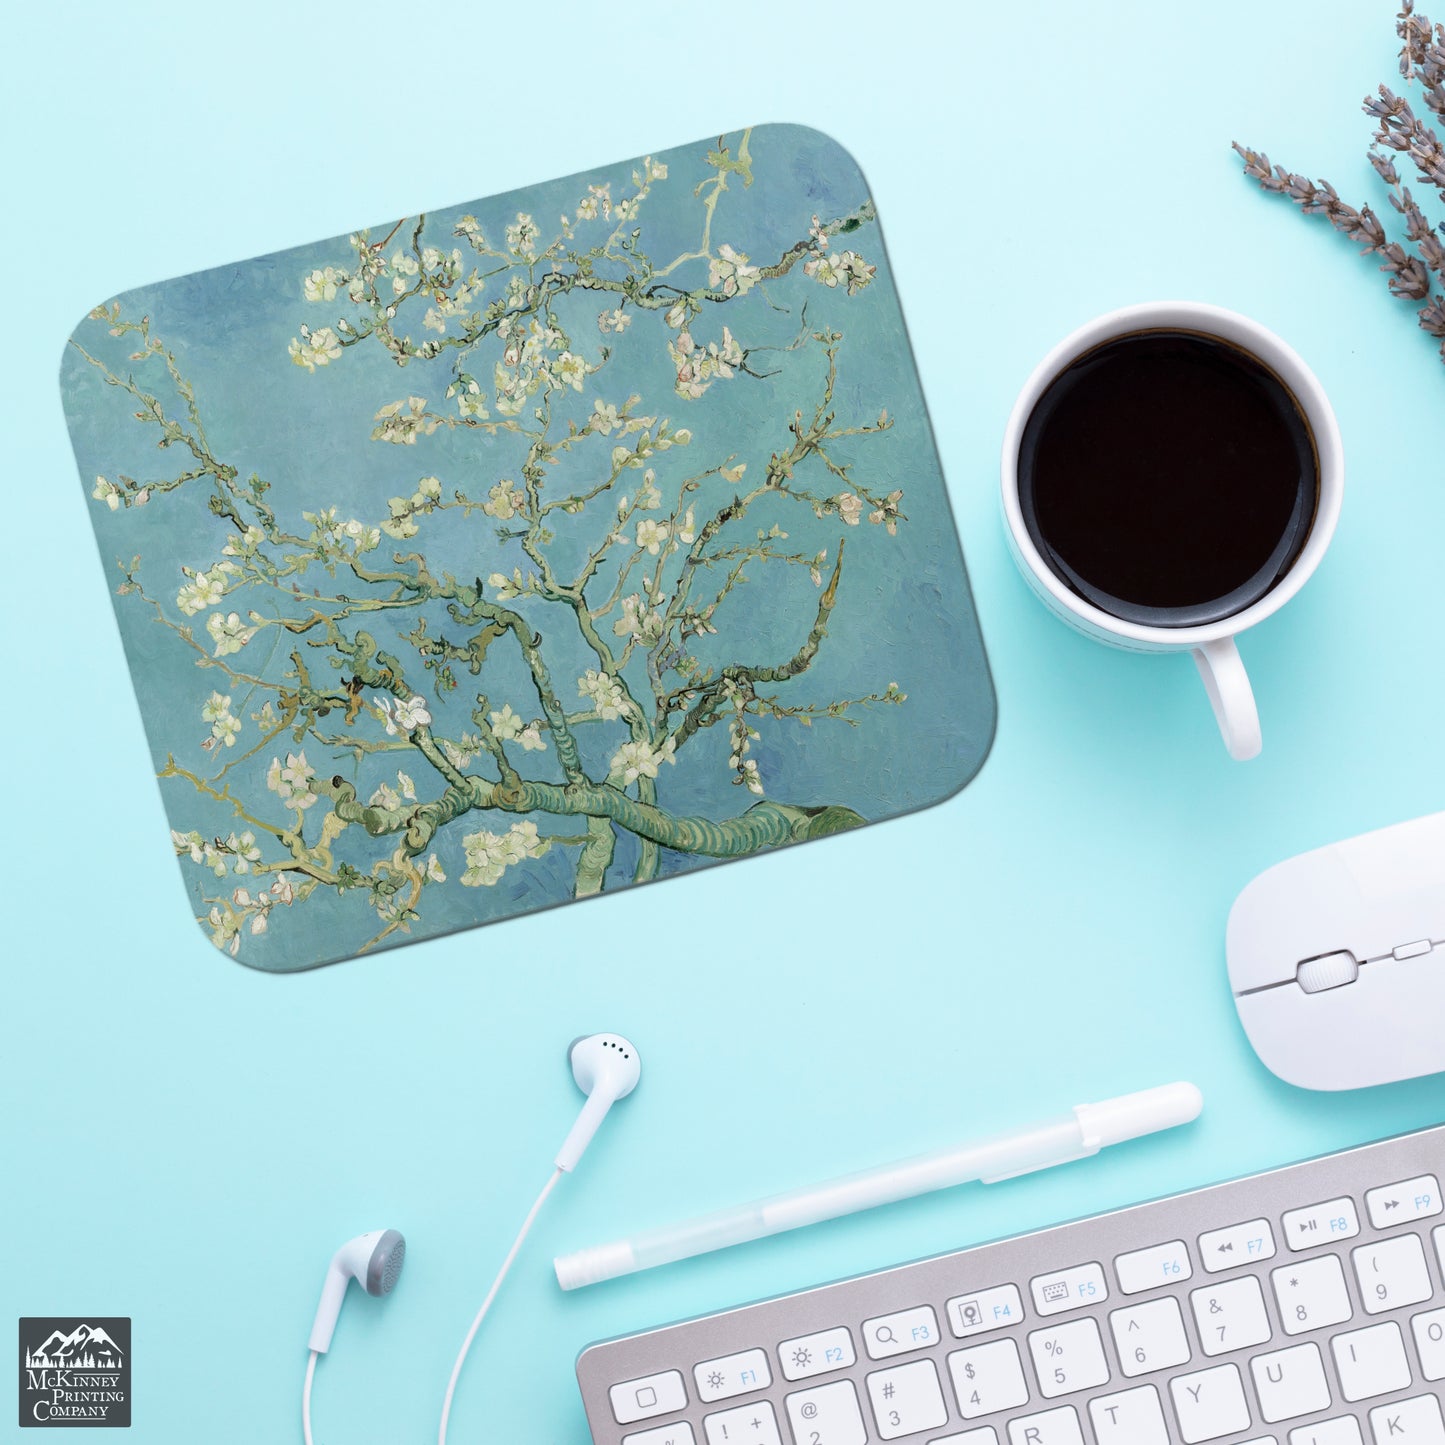 Mouse Pad, Van Gogh Print, Almond Blossom, Floral Mousepad, Desk Pad, Desktop Computer, Laptop Accessories